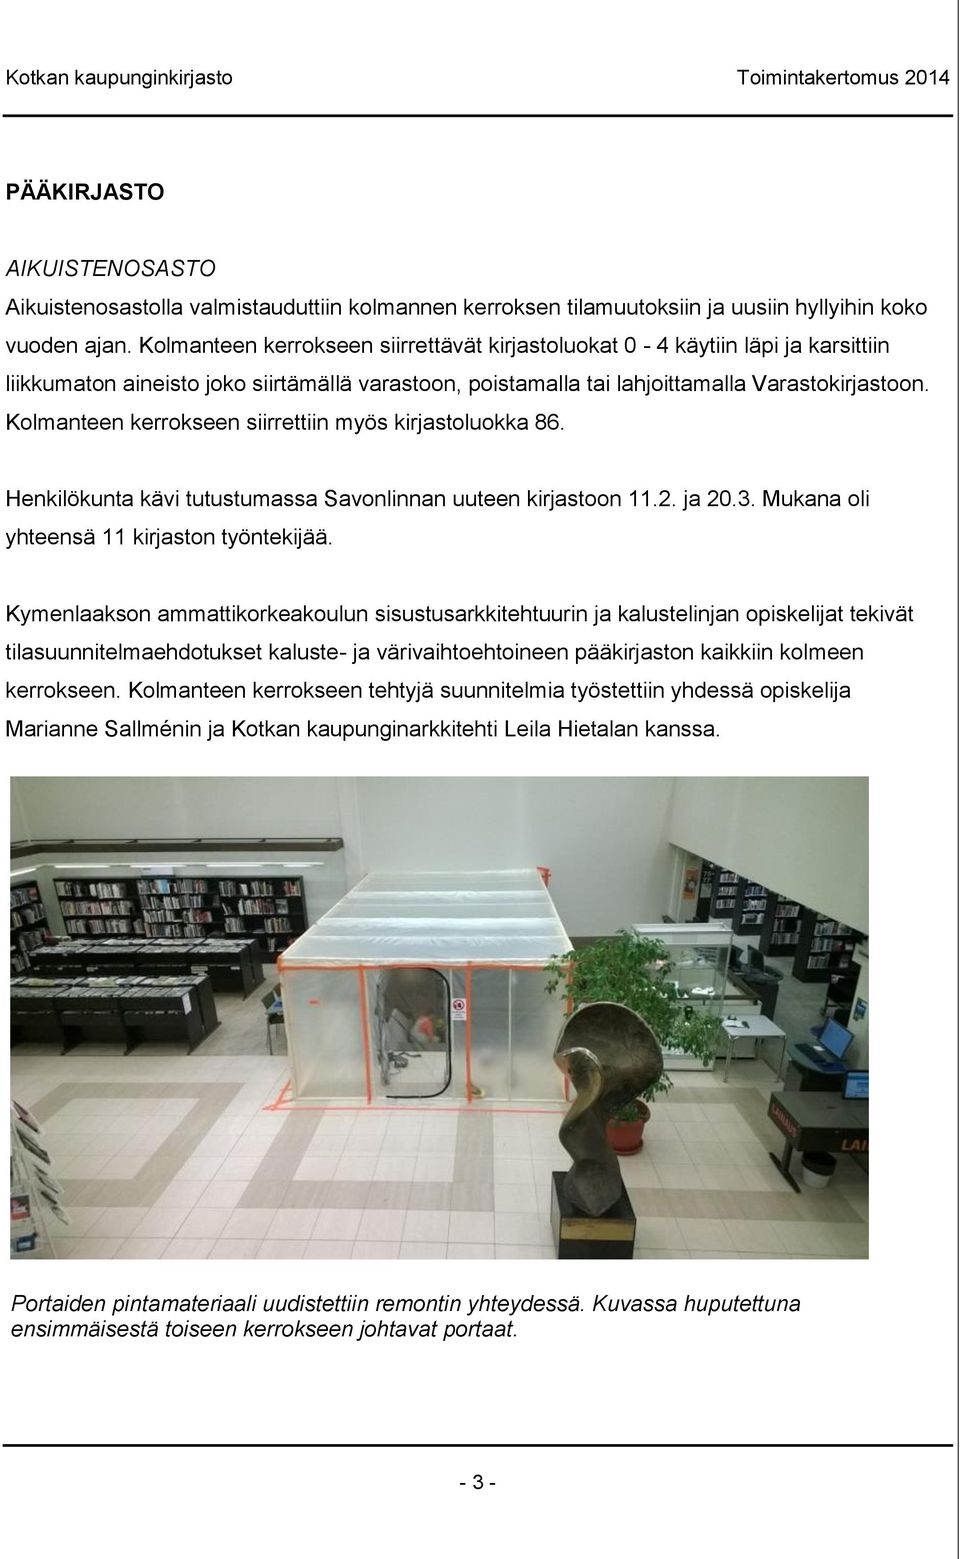 Kolmanteen kerrokseen siirrettiin myös kirjastoluokka 86. Henkilökunta kävi tutustumassa Savonlinnan uuteen kirjastoon 11.2. ja 20.3. Mukana oli yhteensä 11 kirjaston työntekijää.